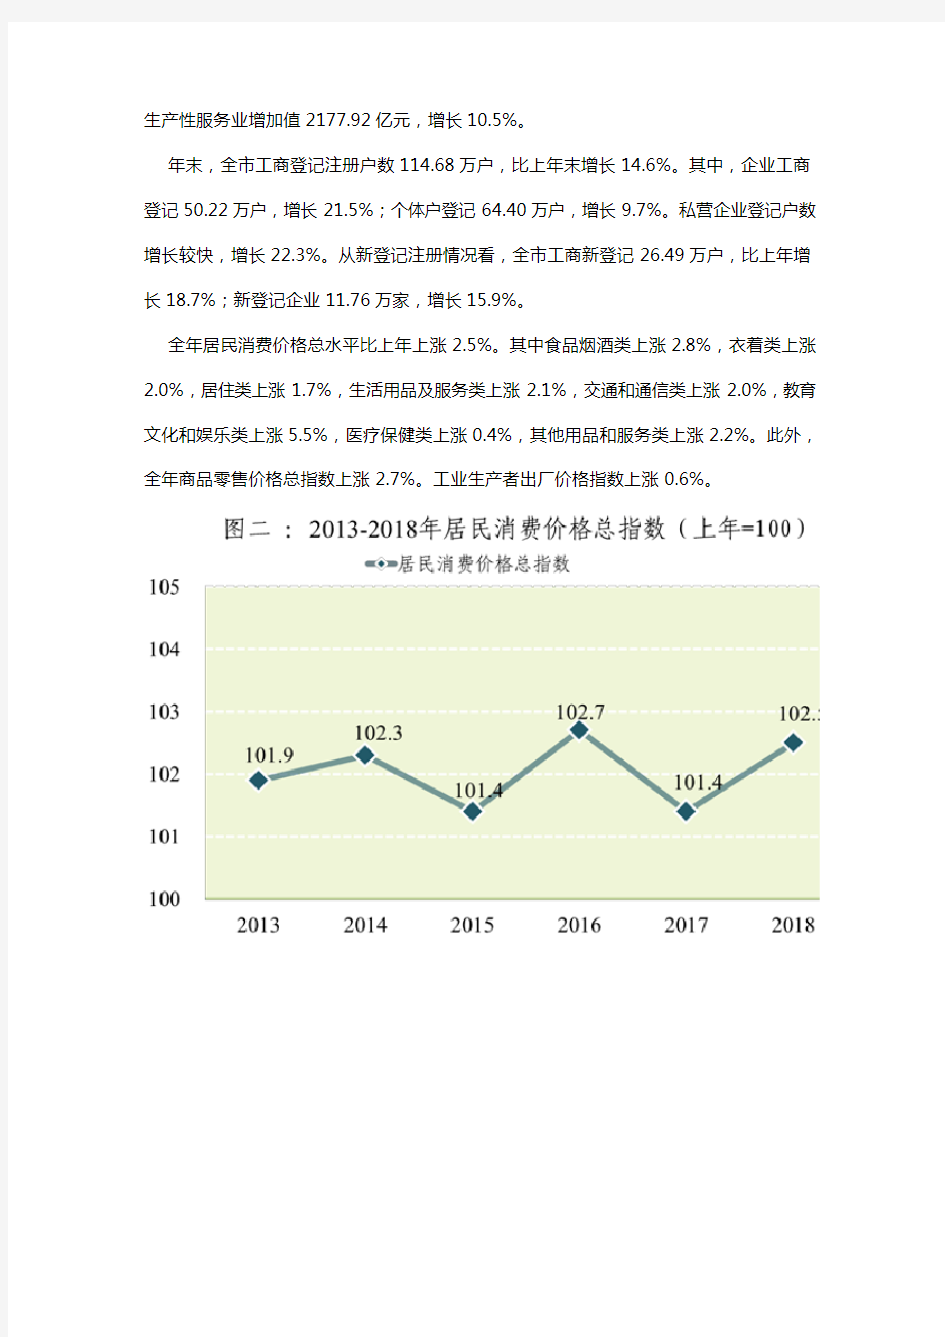 2018年东莞市国民经济和社会发展统计公报